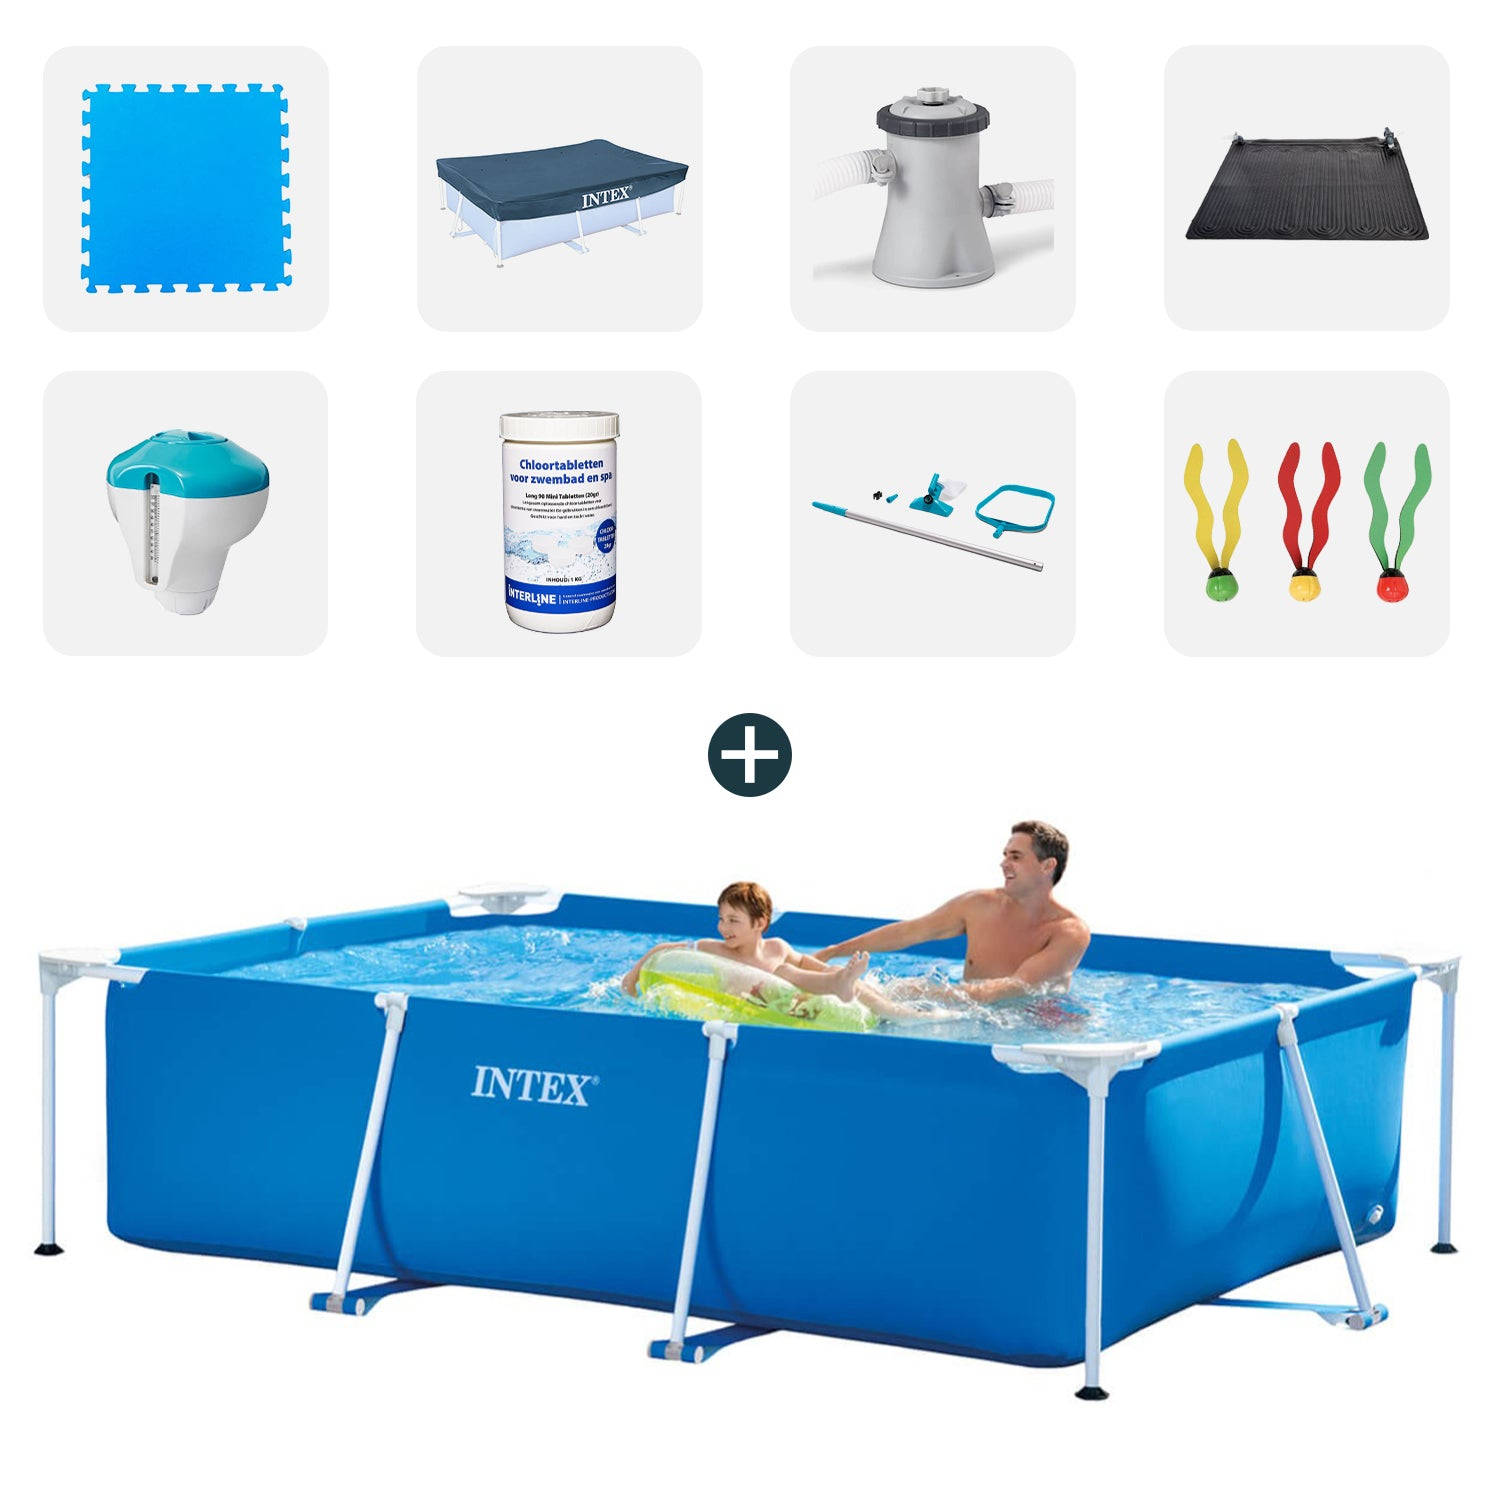 Intex zwembad - Complete set - 260x160x65 cm - Inclusief zwembadtegels - Afdekzeil - Filterpomp - Solarmat - Chloordrijver+thermometer - Chloortabletten - Onderhoudsset - Duikspeel